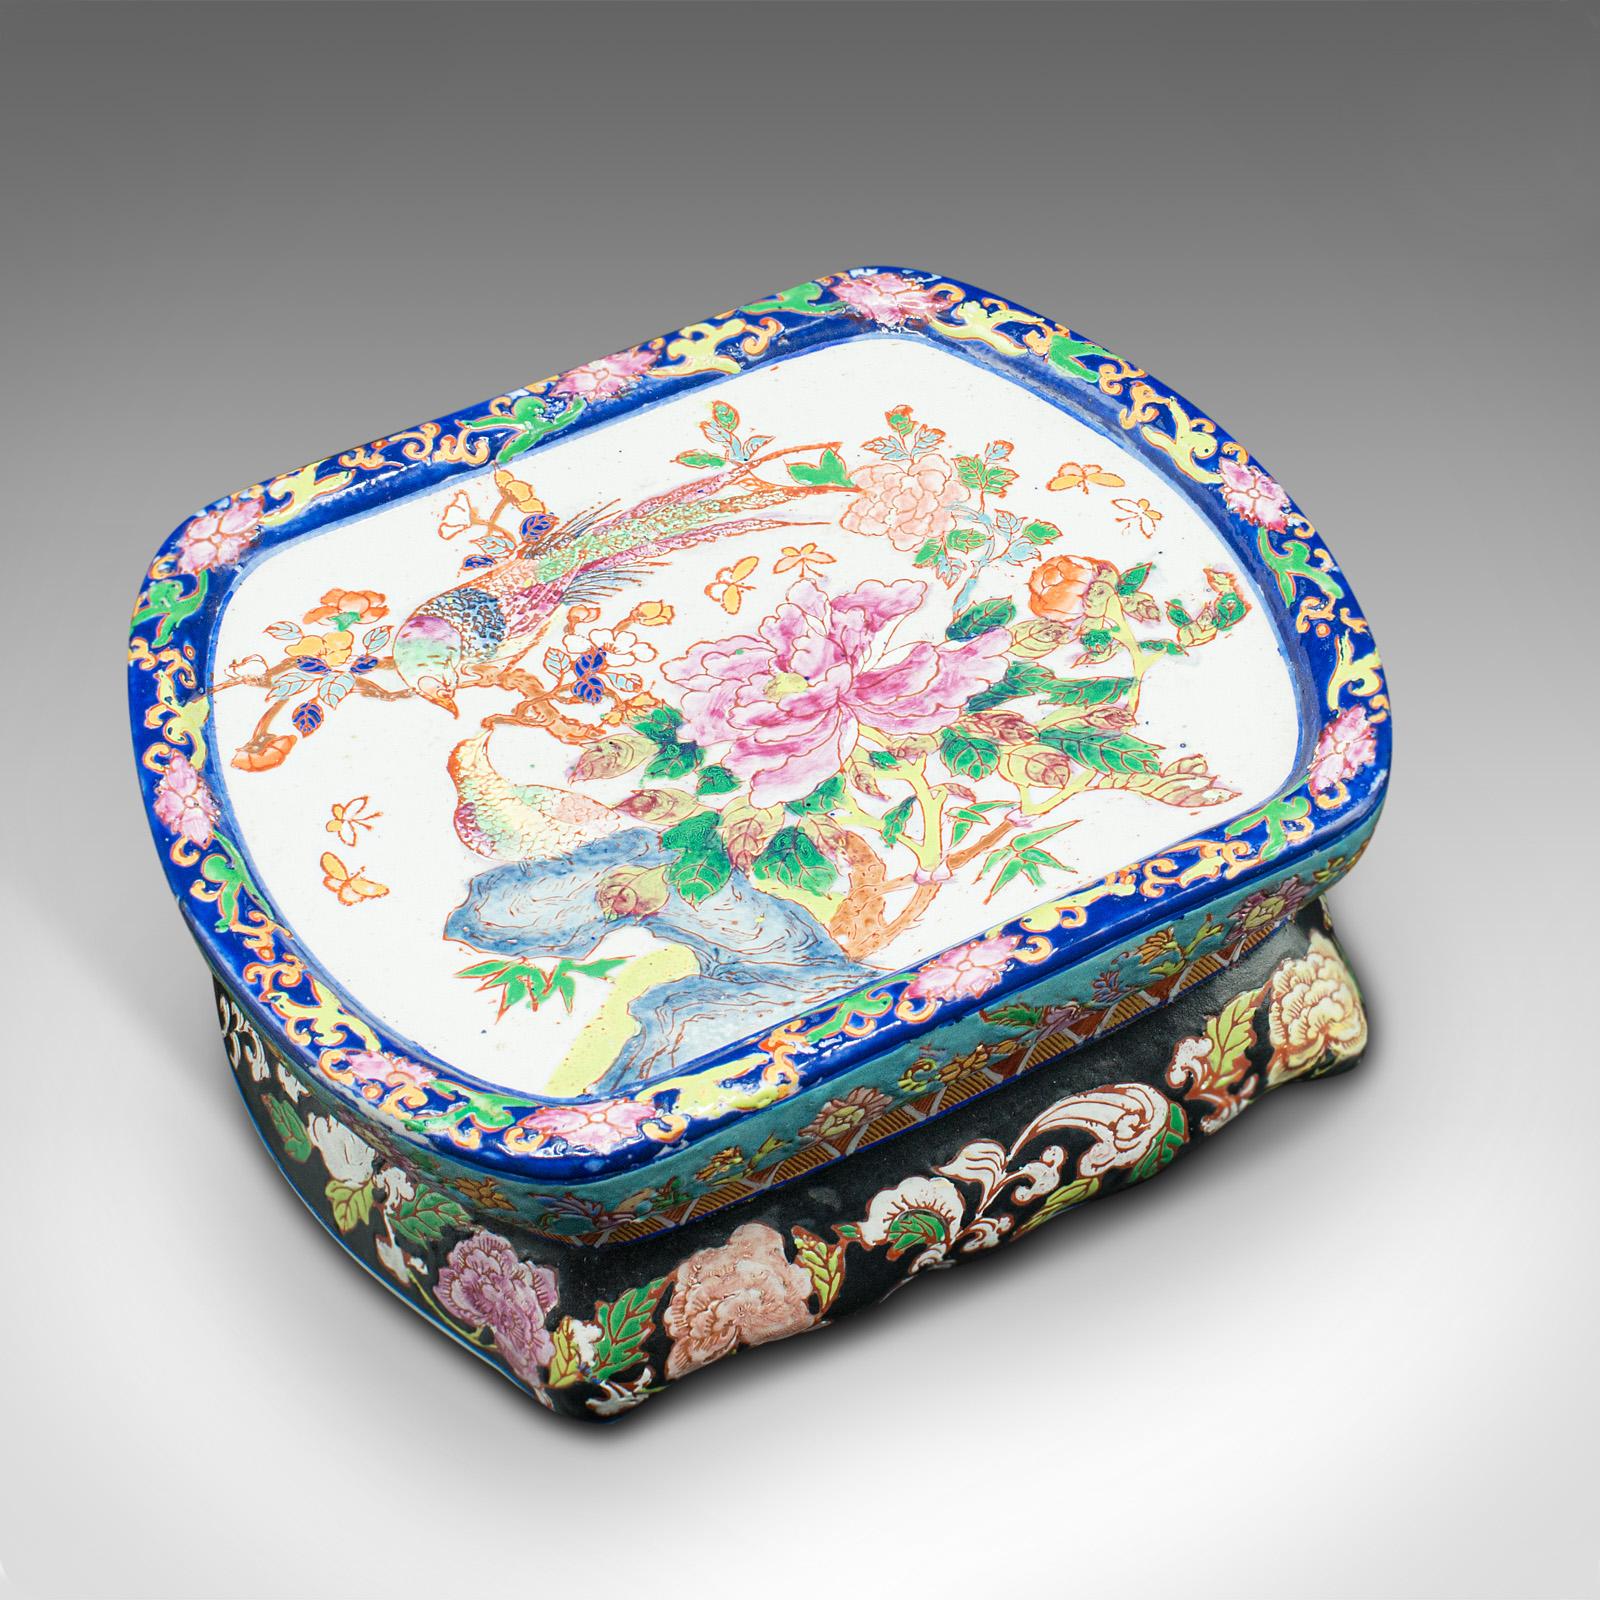 Antique Decorative Jardiniere, Chinese, Ceramic, Planter, Victorian, Circa 1900 3